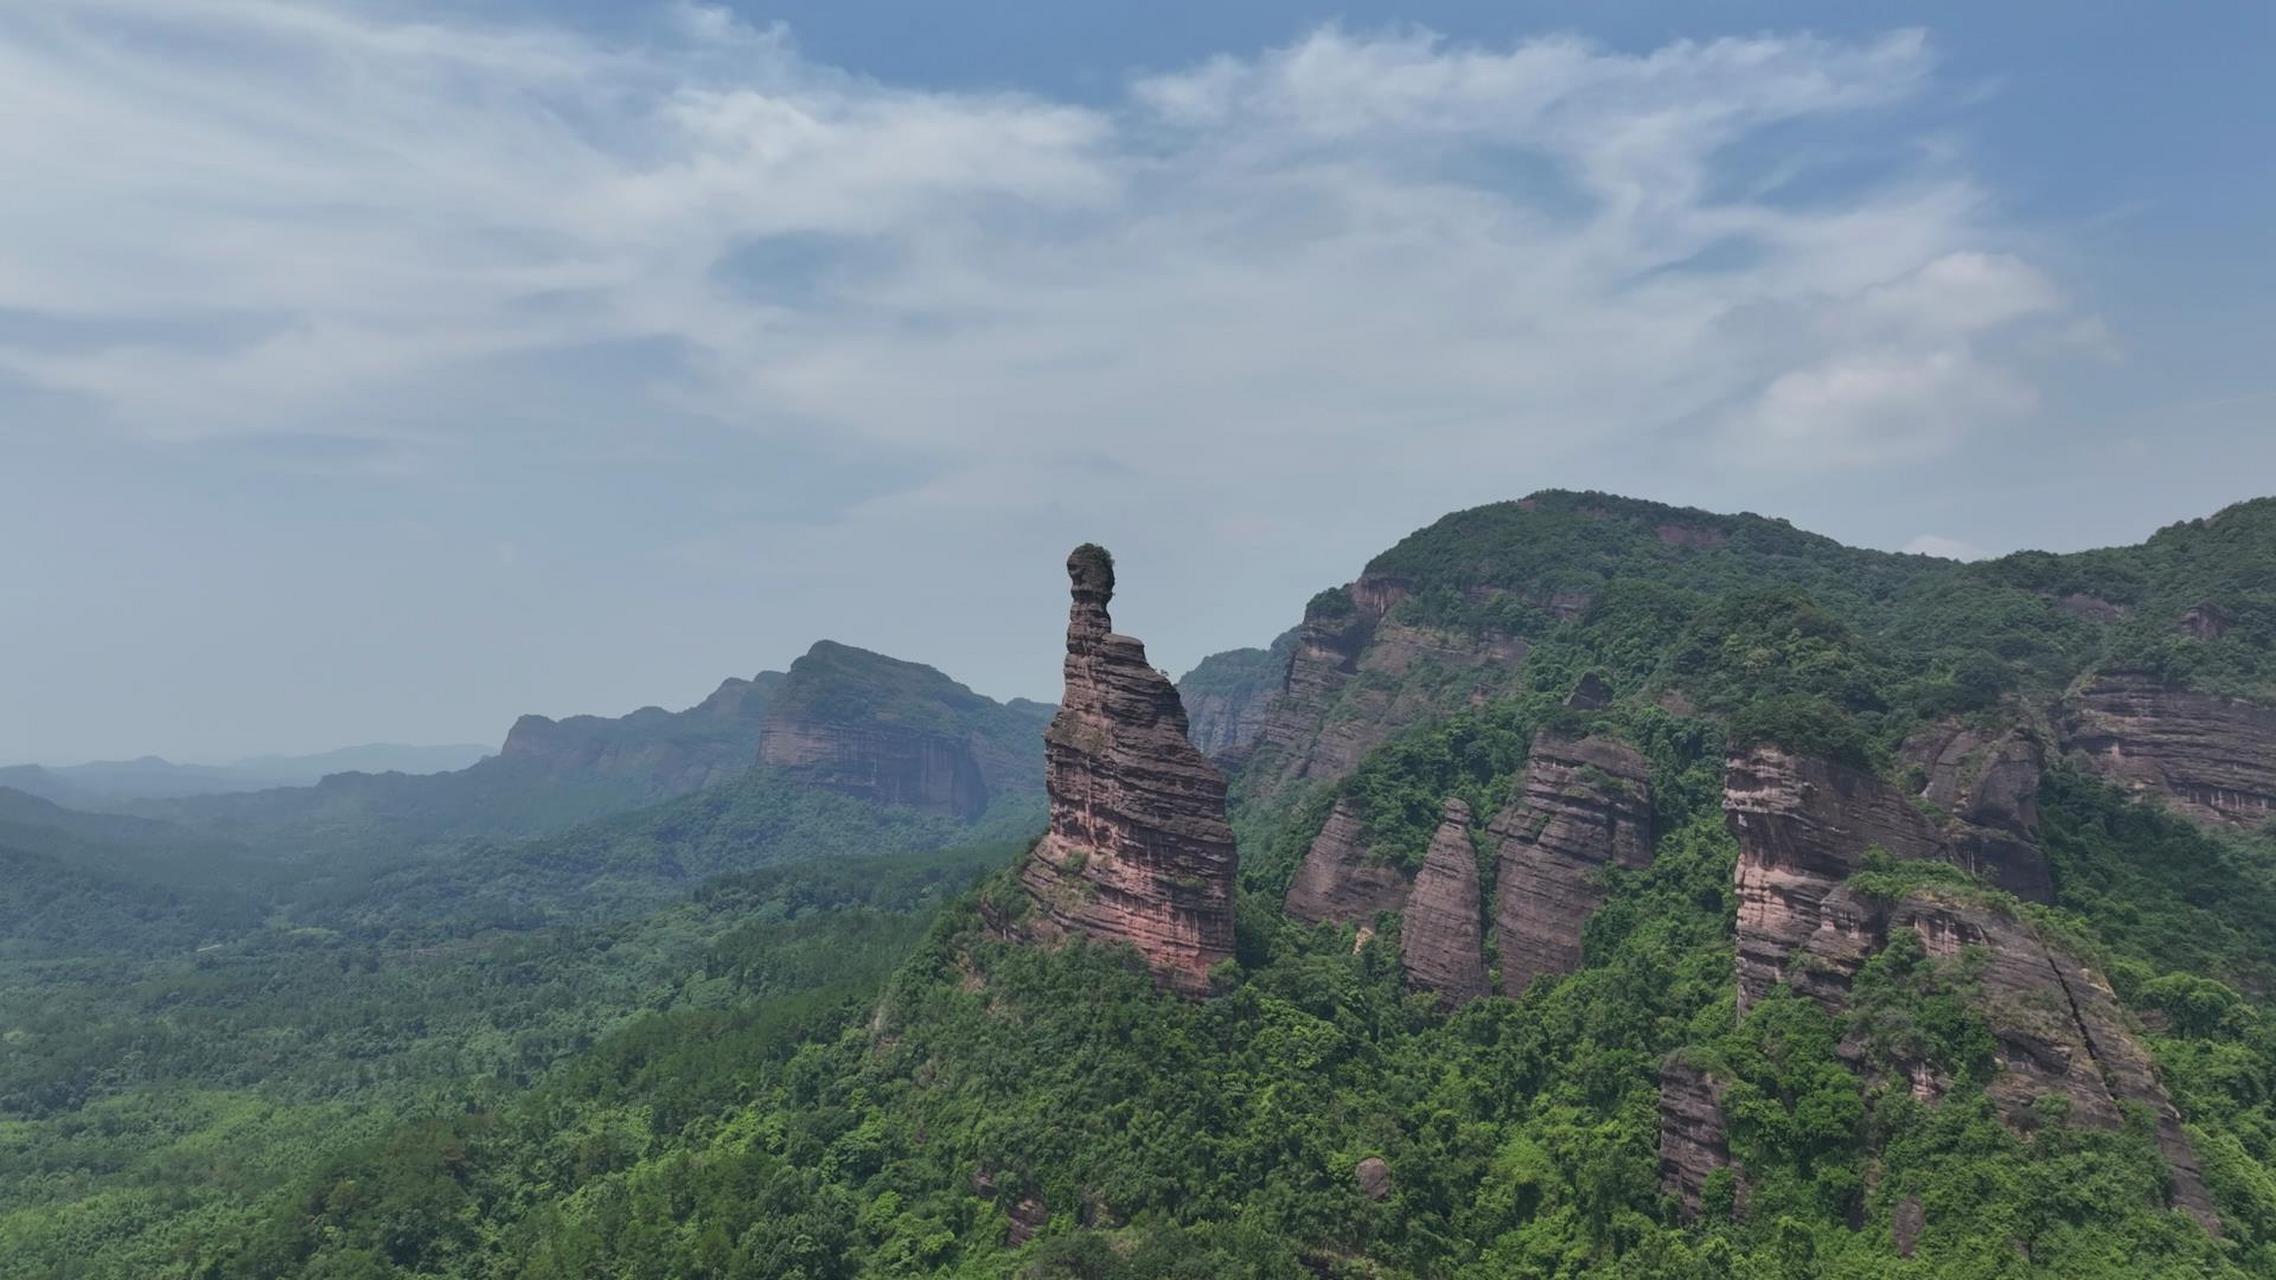 韶关观音山位于广东省韶关市翁源县,是一座以观音文化为主题的山岳